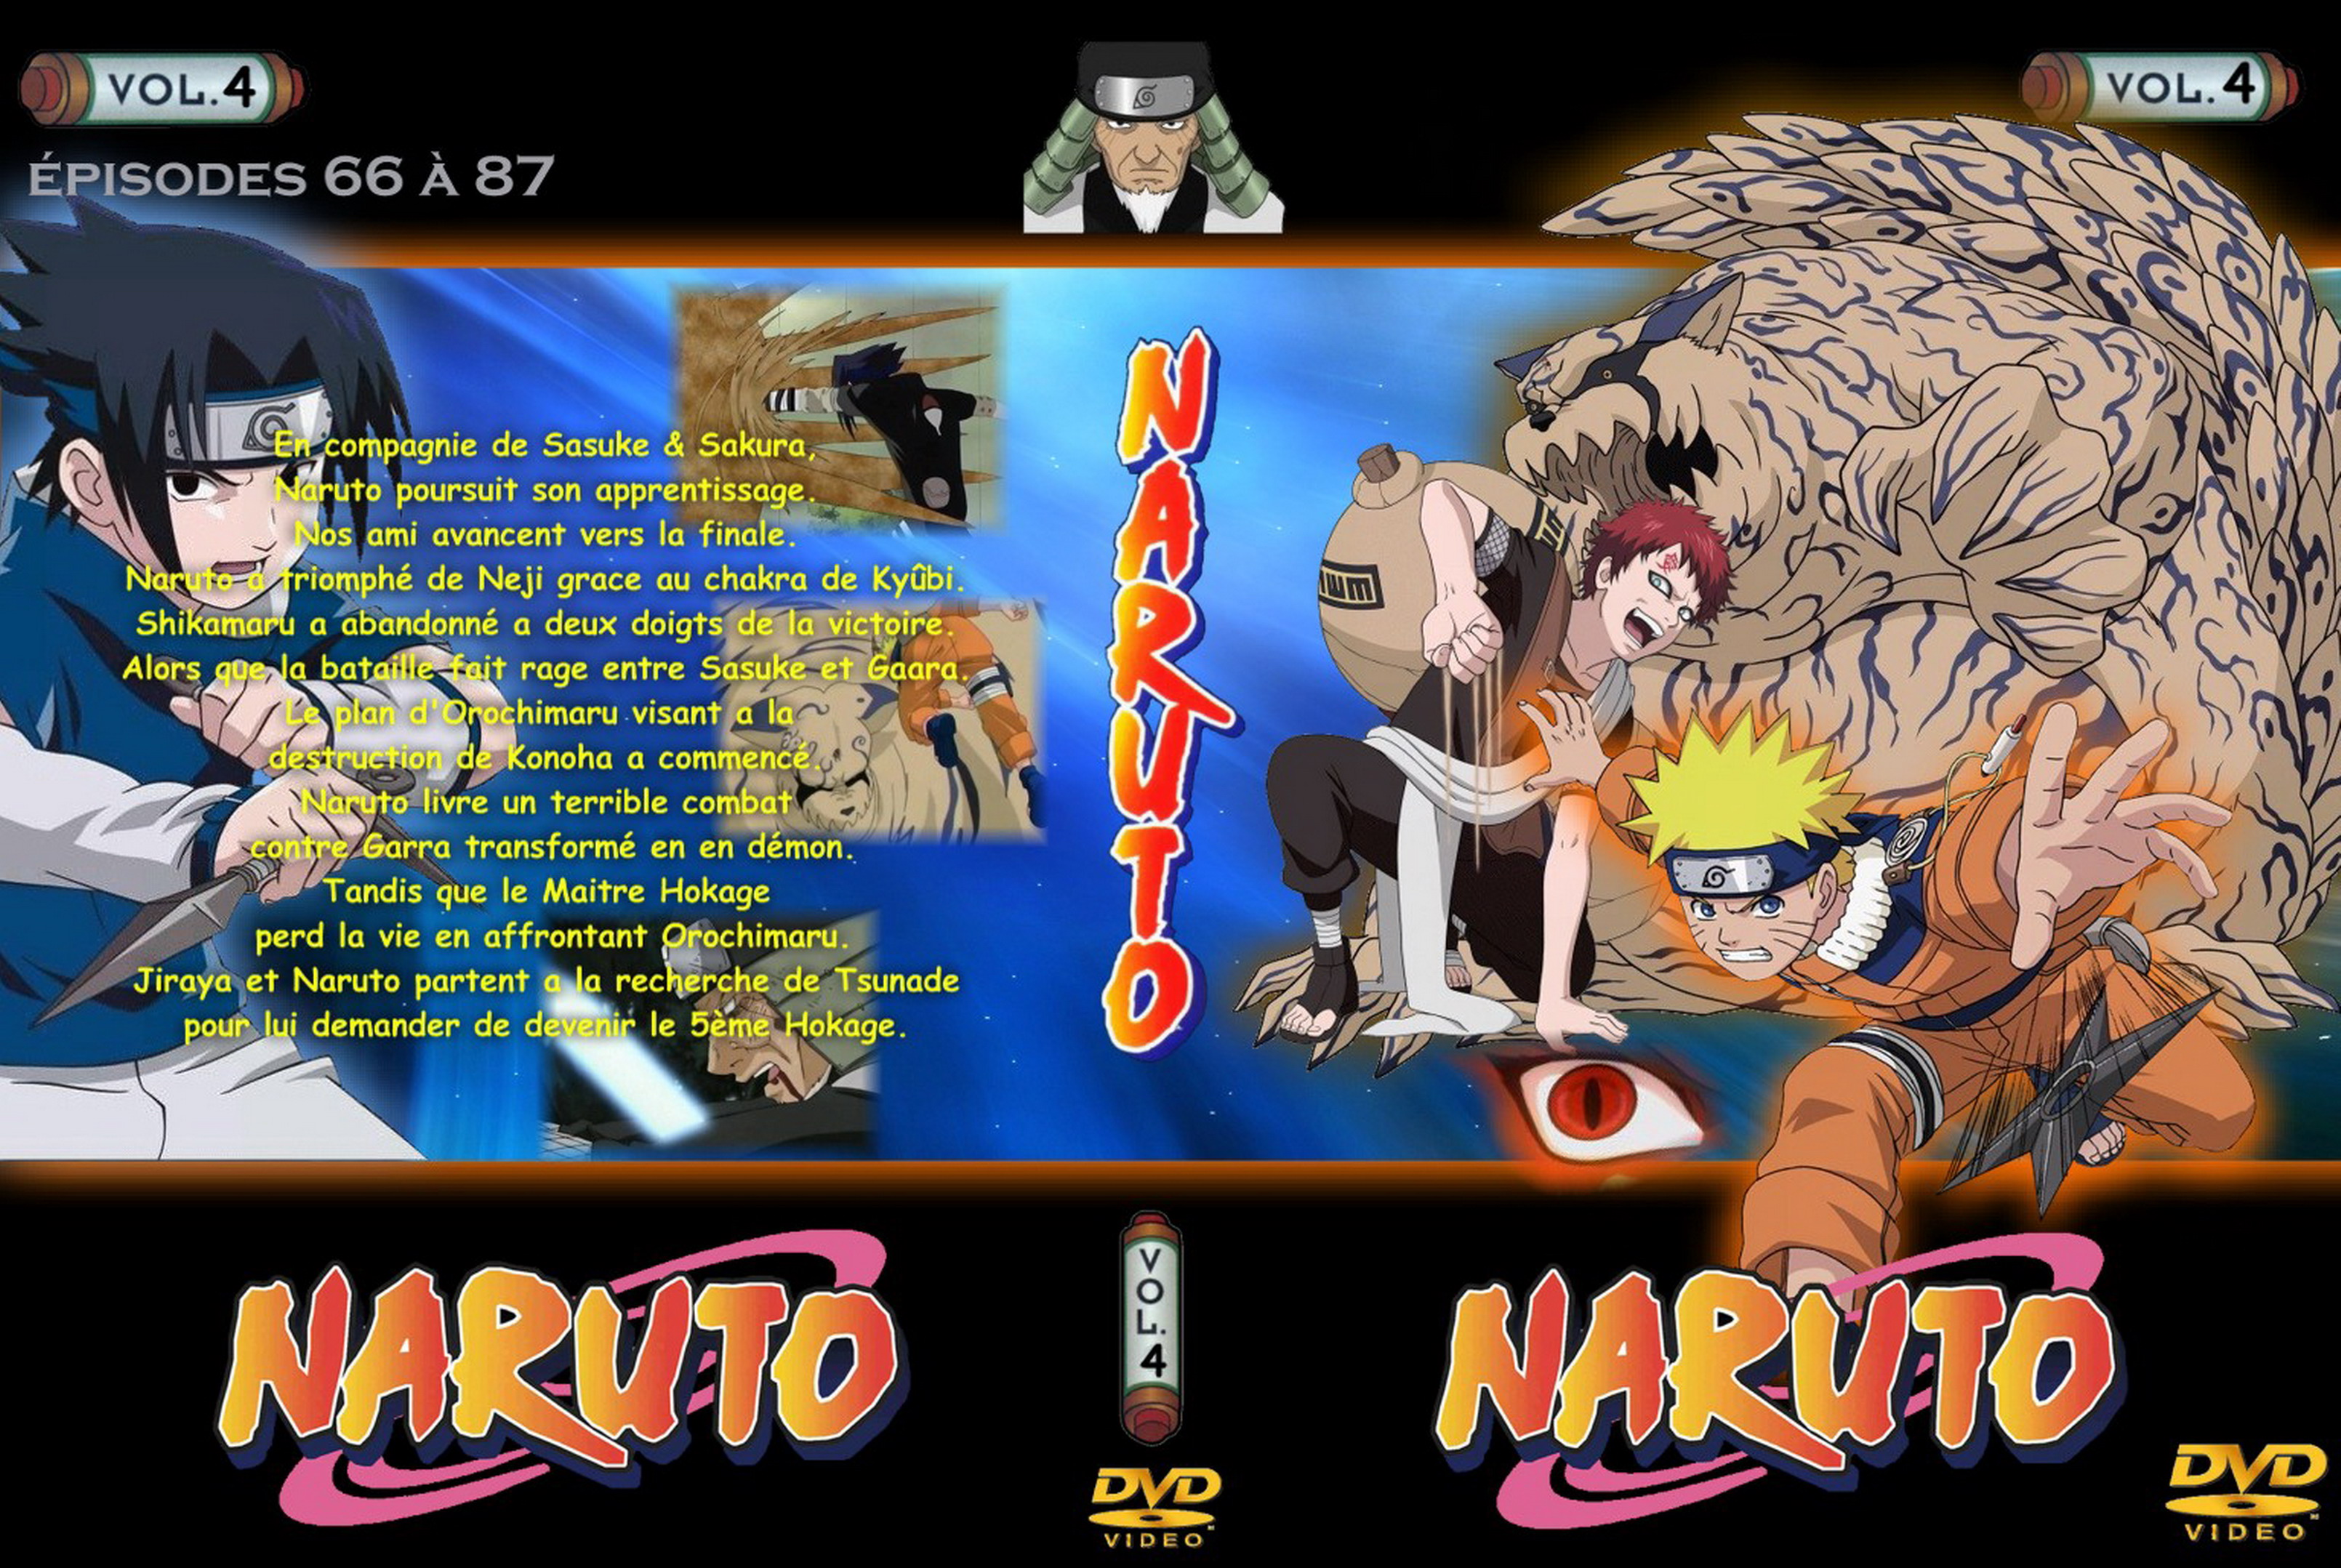 Jaquette DVD Naruto vol 04 v2